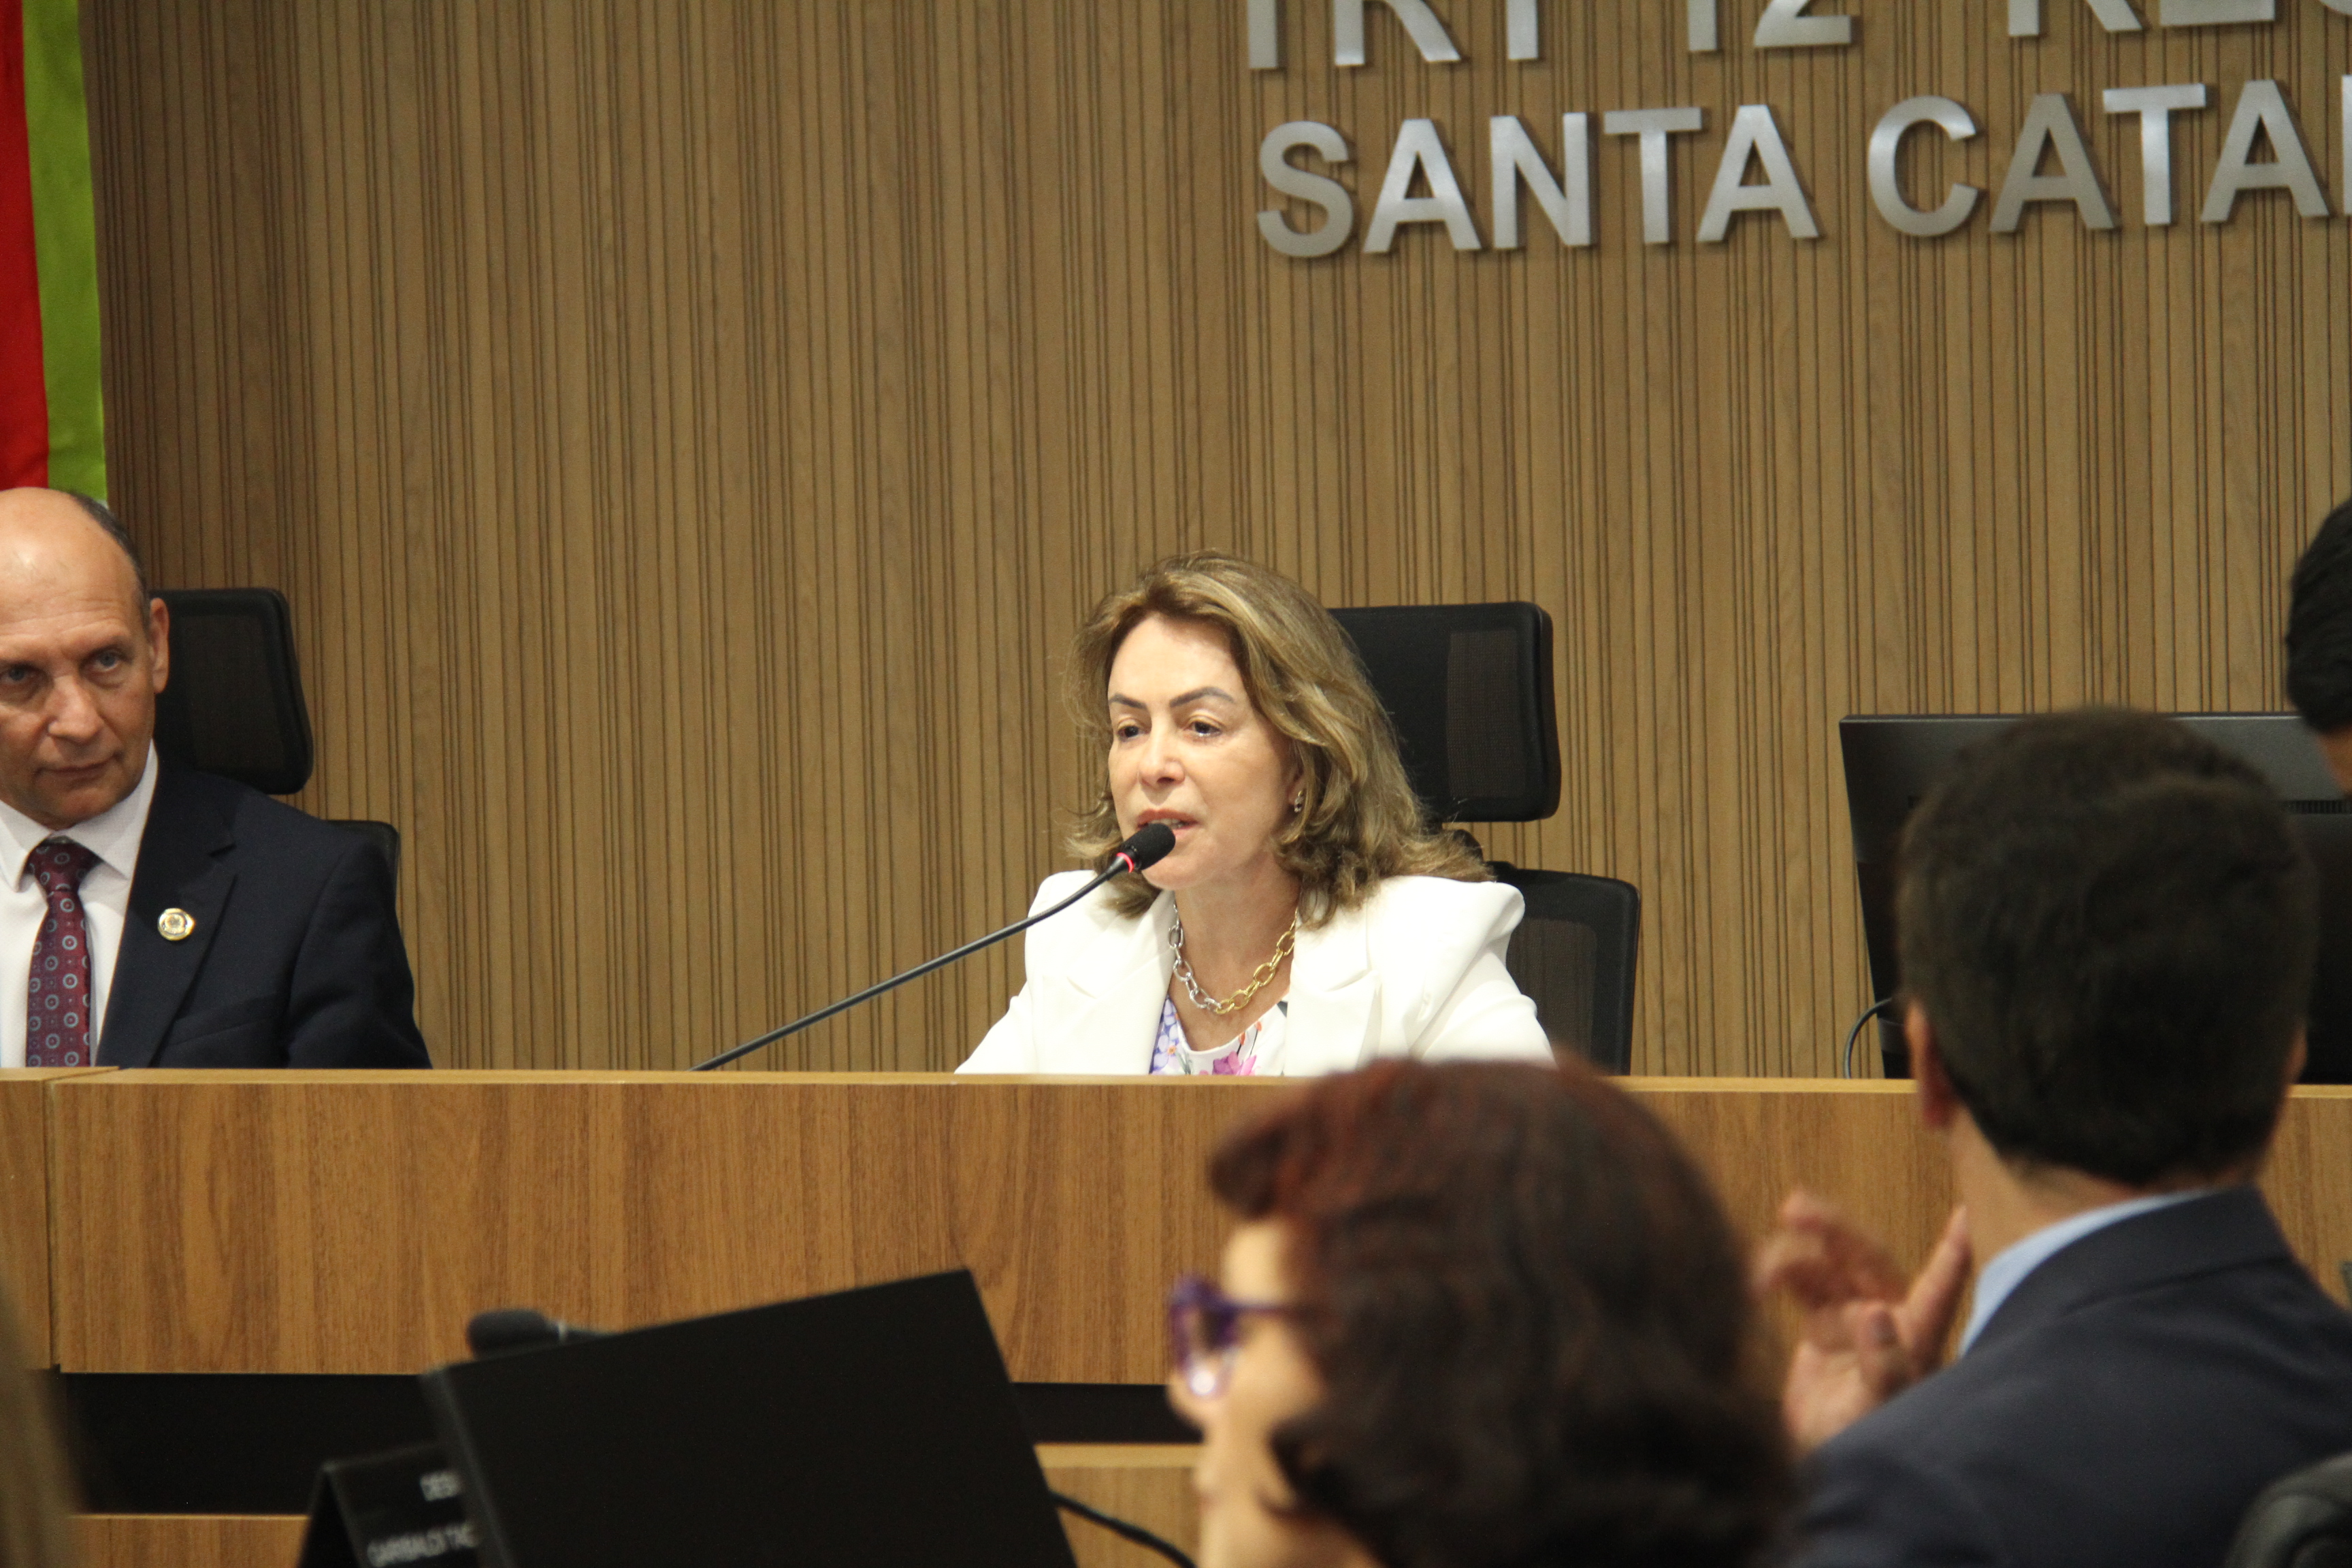 Fotografia mostra a ministra Dora MAria da Costa, uma mulher branca, de cabelos médios e loiros, falando ao microfone em uma mesa no plenário do TRT-SC